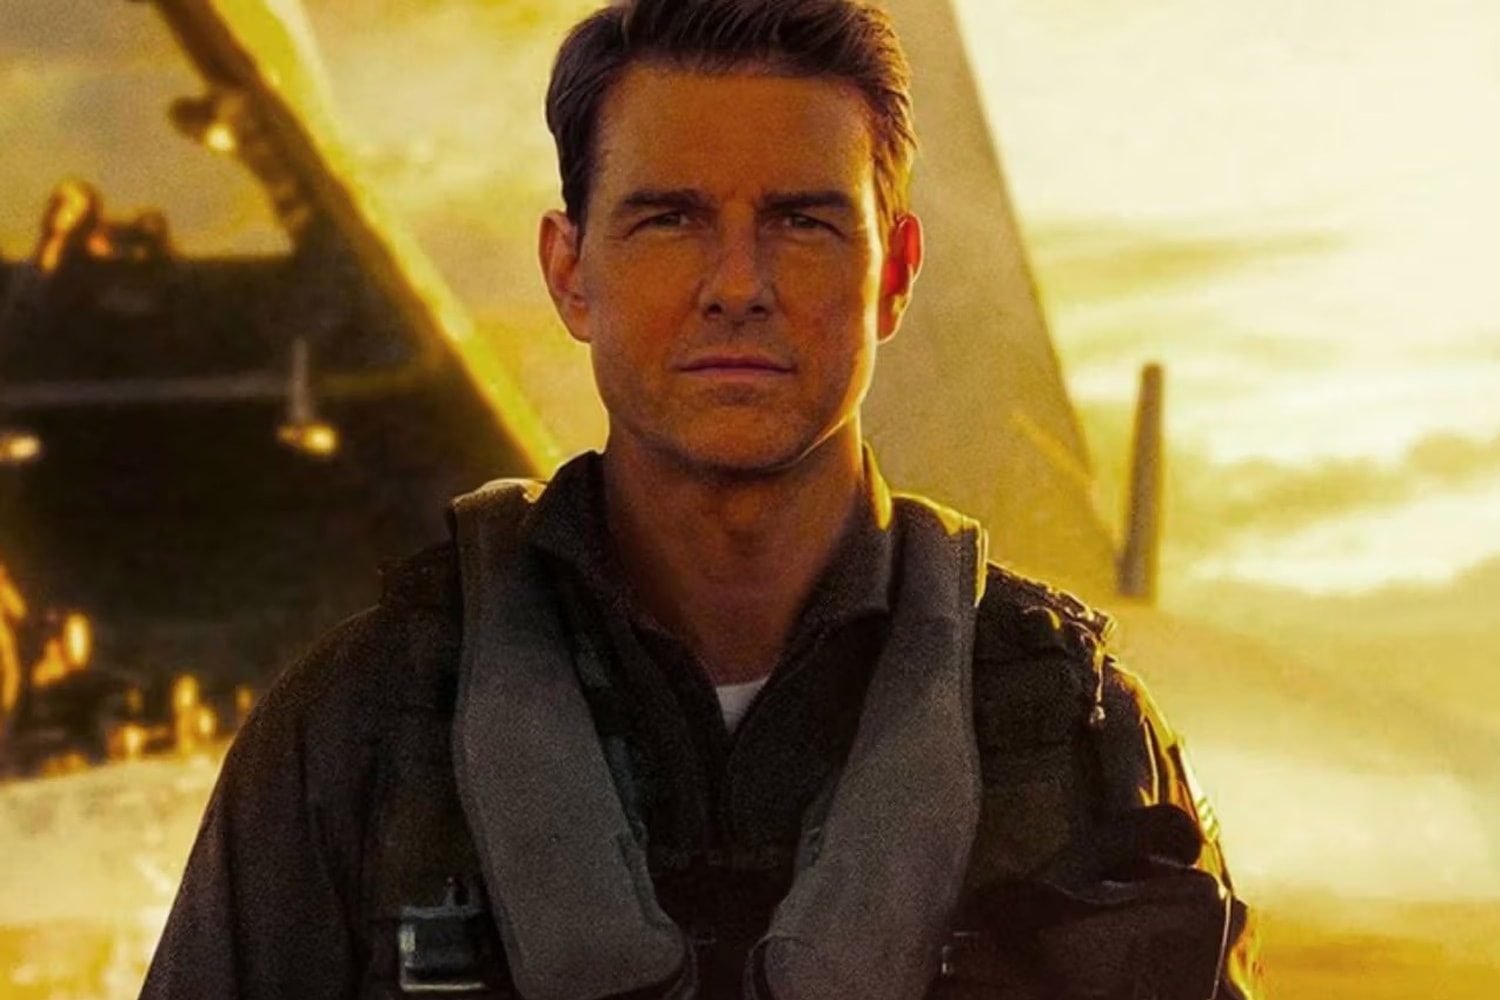 消息称 Tom Cruise 主演票房大片《Top Gun: Maverick》确定推出续集《Top Gun 3》